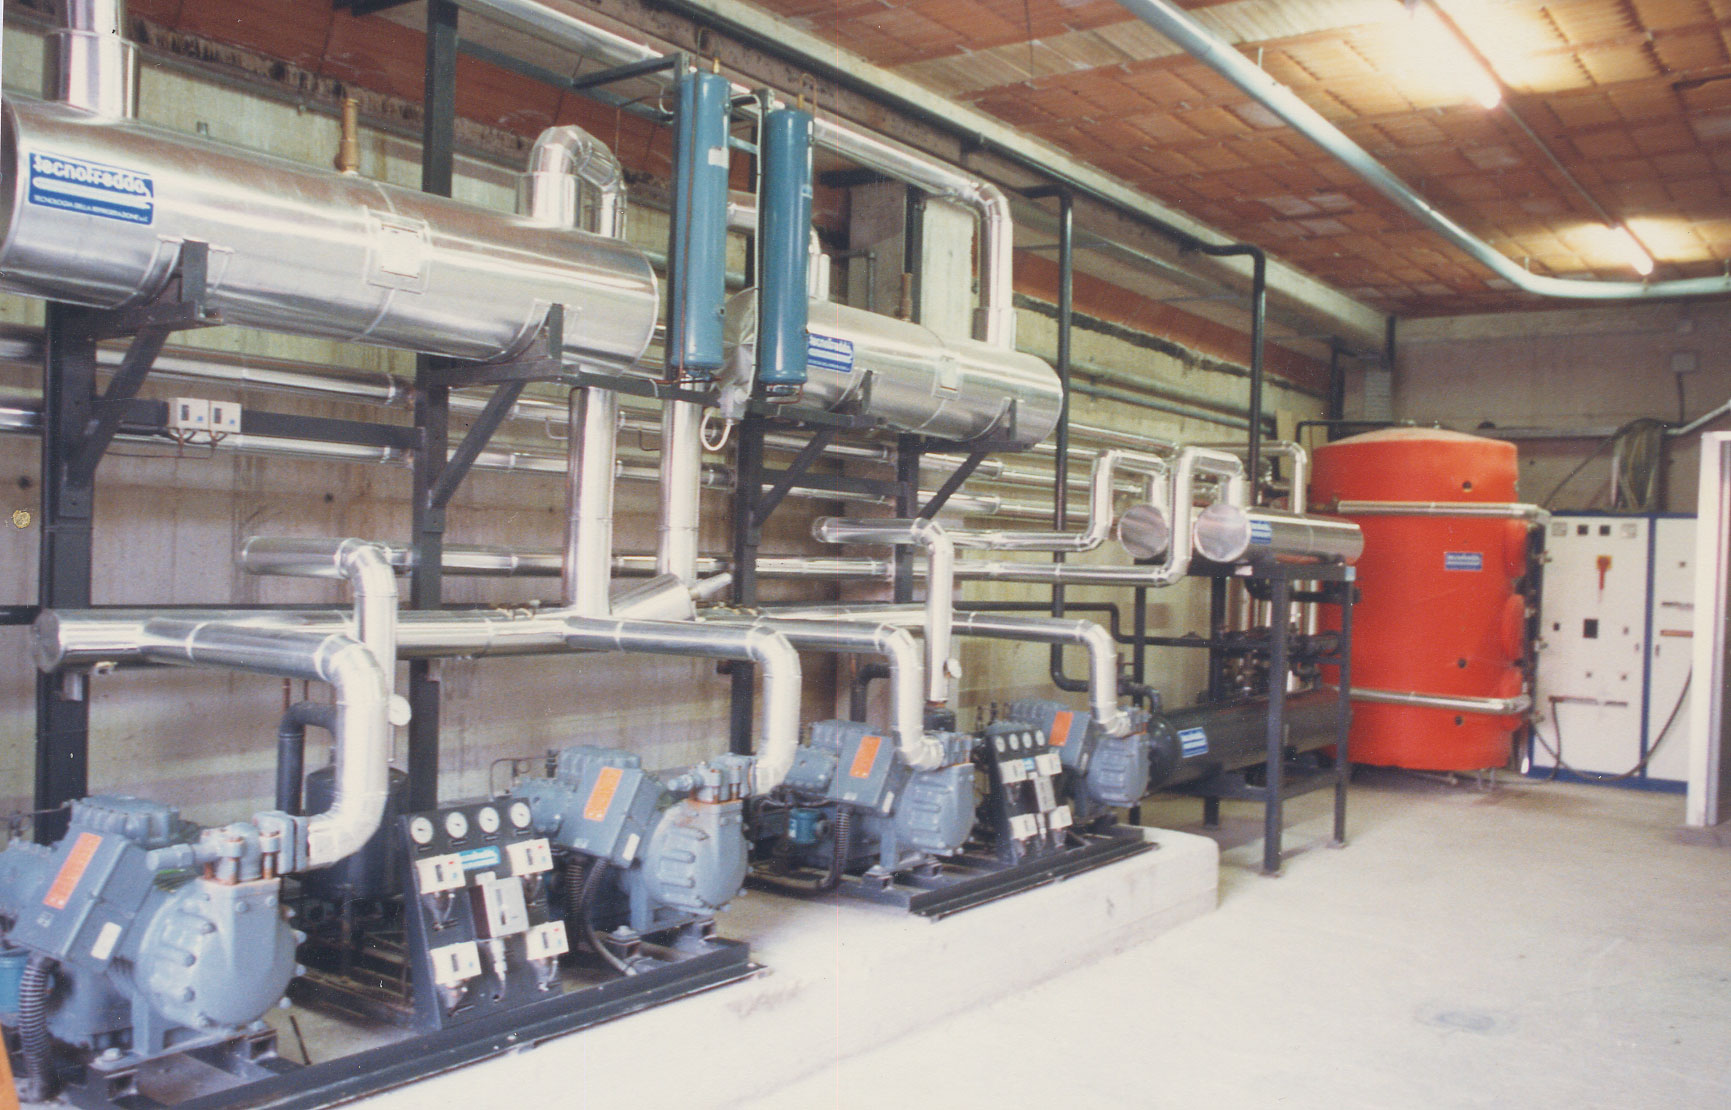 Centrale frigorifera da sala macchine per lavorazione carni particolare serbatoio accumulo acqua calda prodotta da recupero di calore